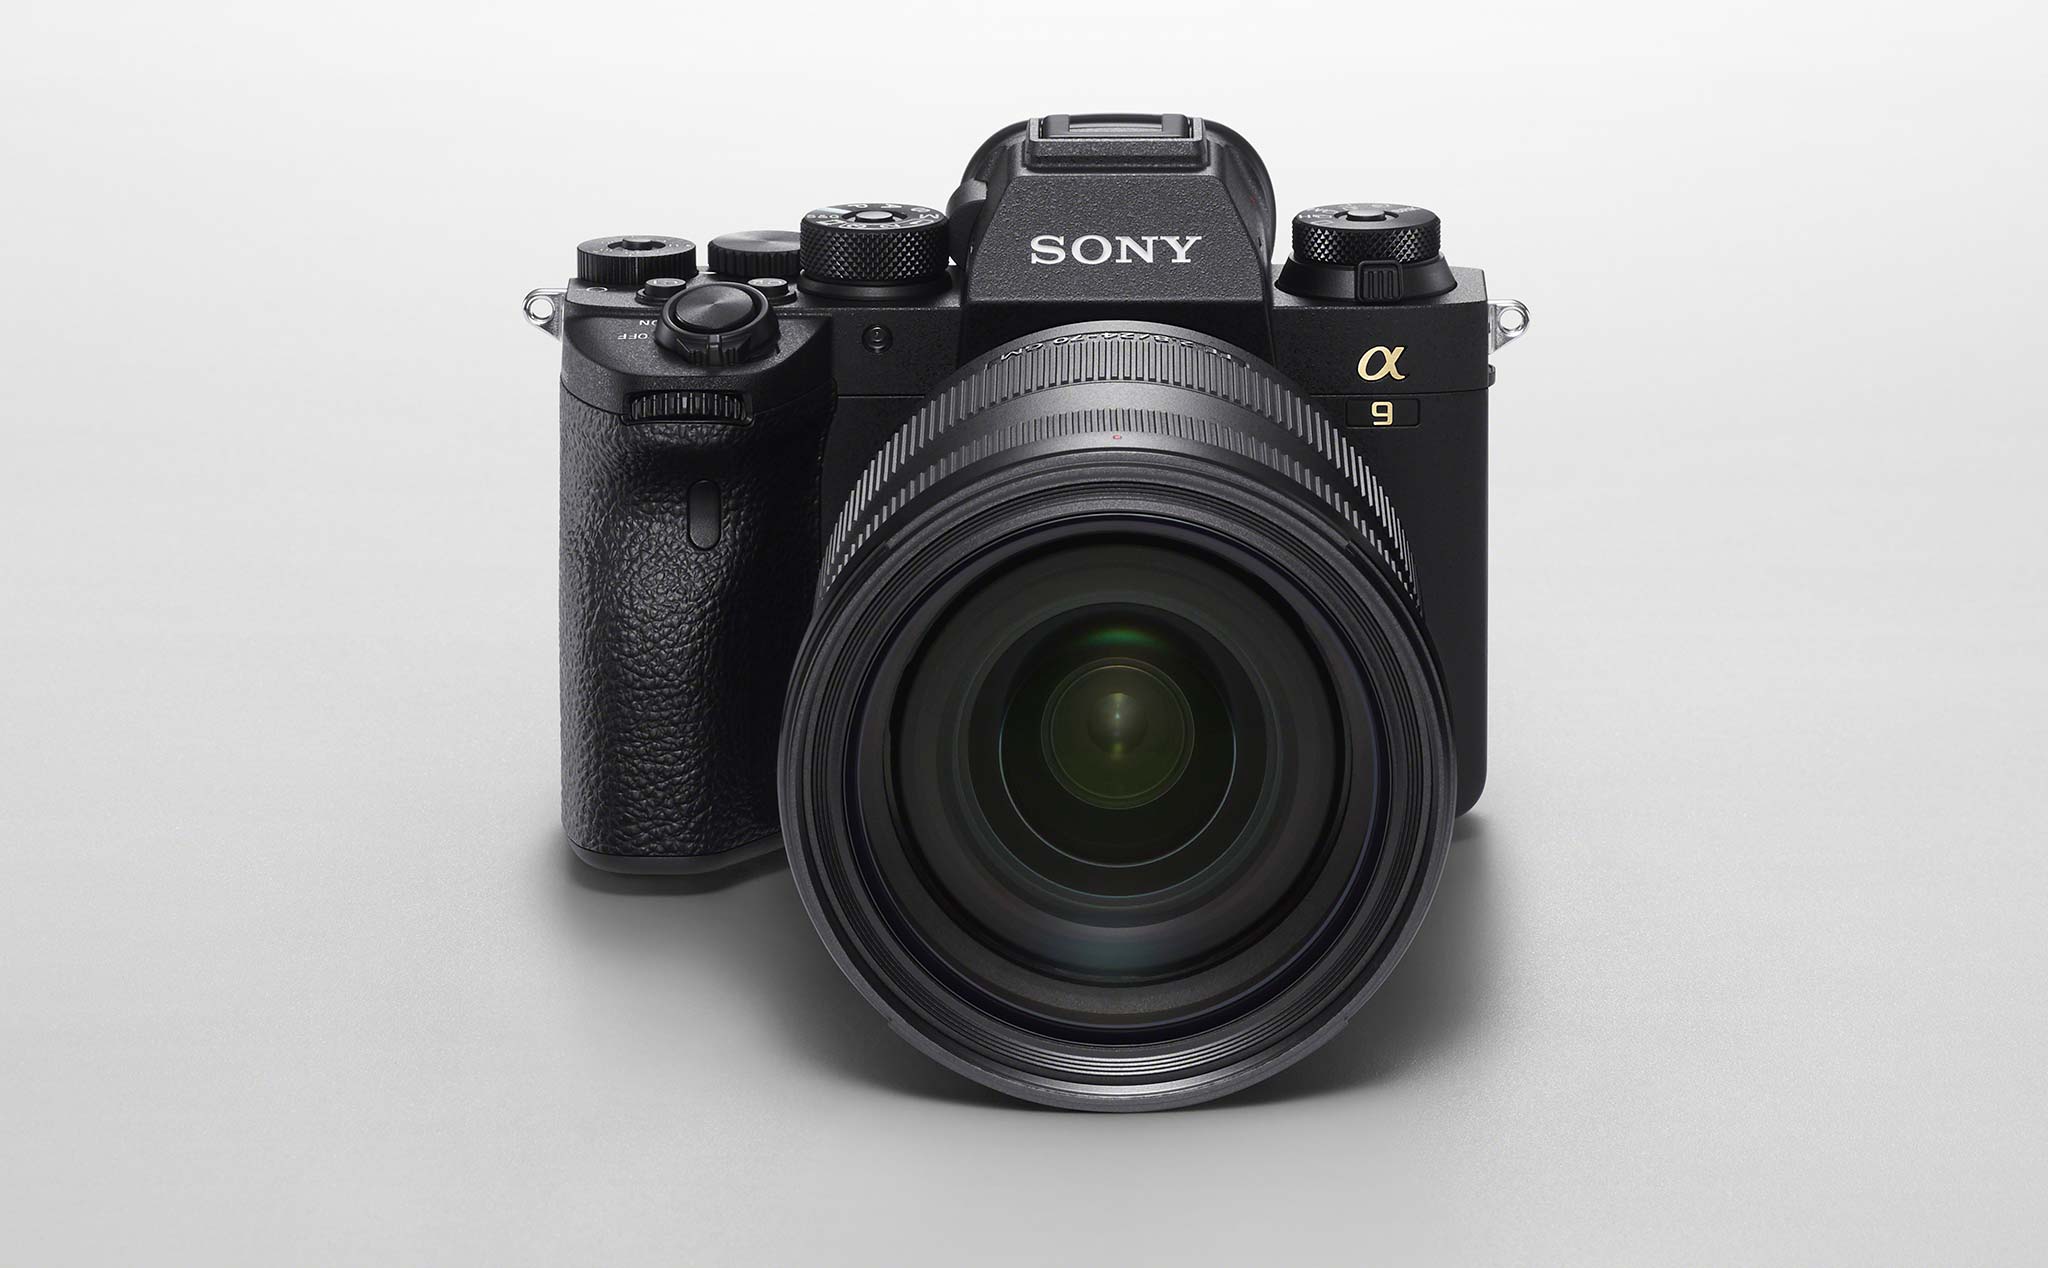 Sony A9 II chính thức: phiên bản hoàn thiện của A9 với thân máy bền bỉ hơn, chụp 10 fps, giá $4.500